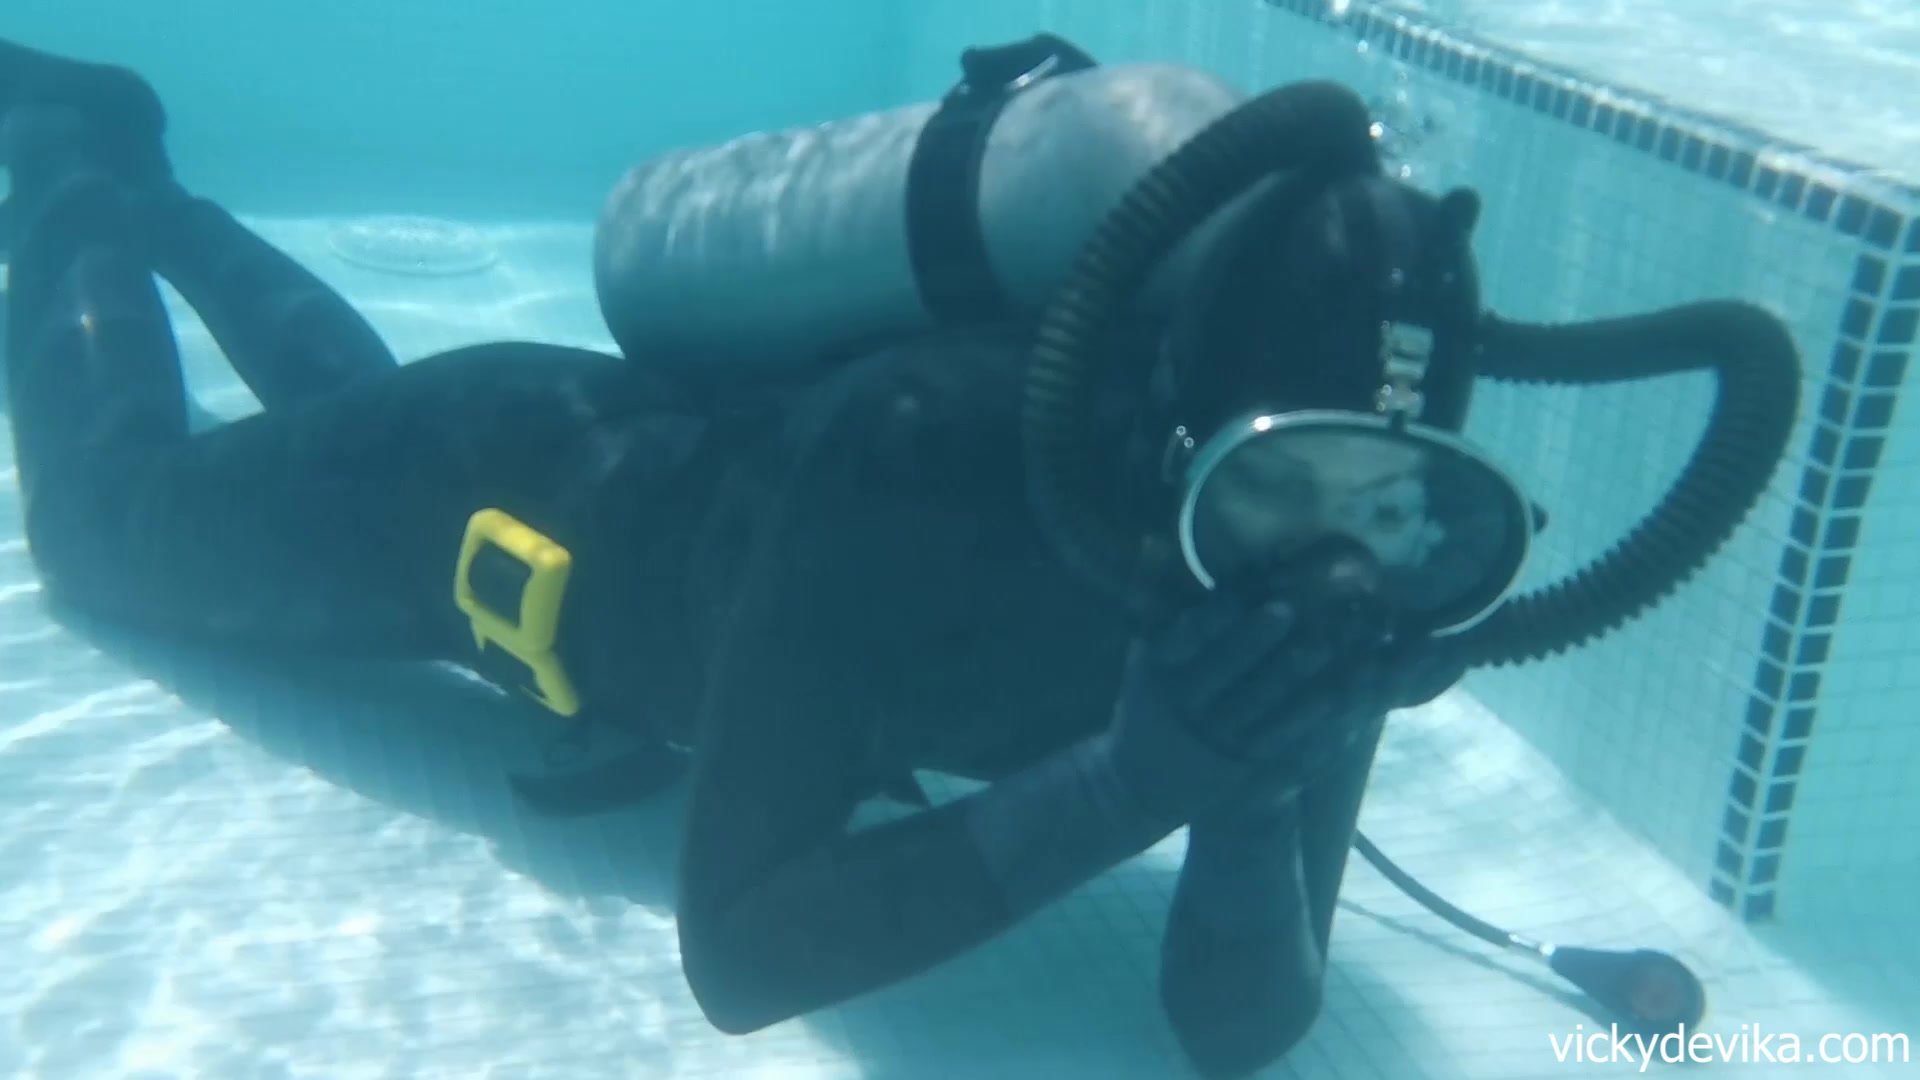 FFM Diver Runs Out Of Air